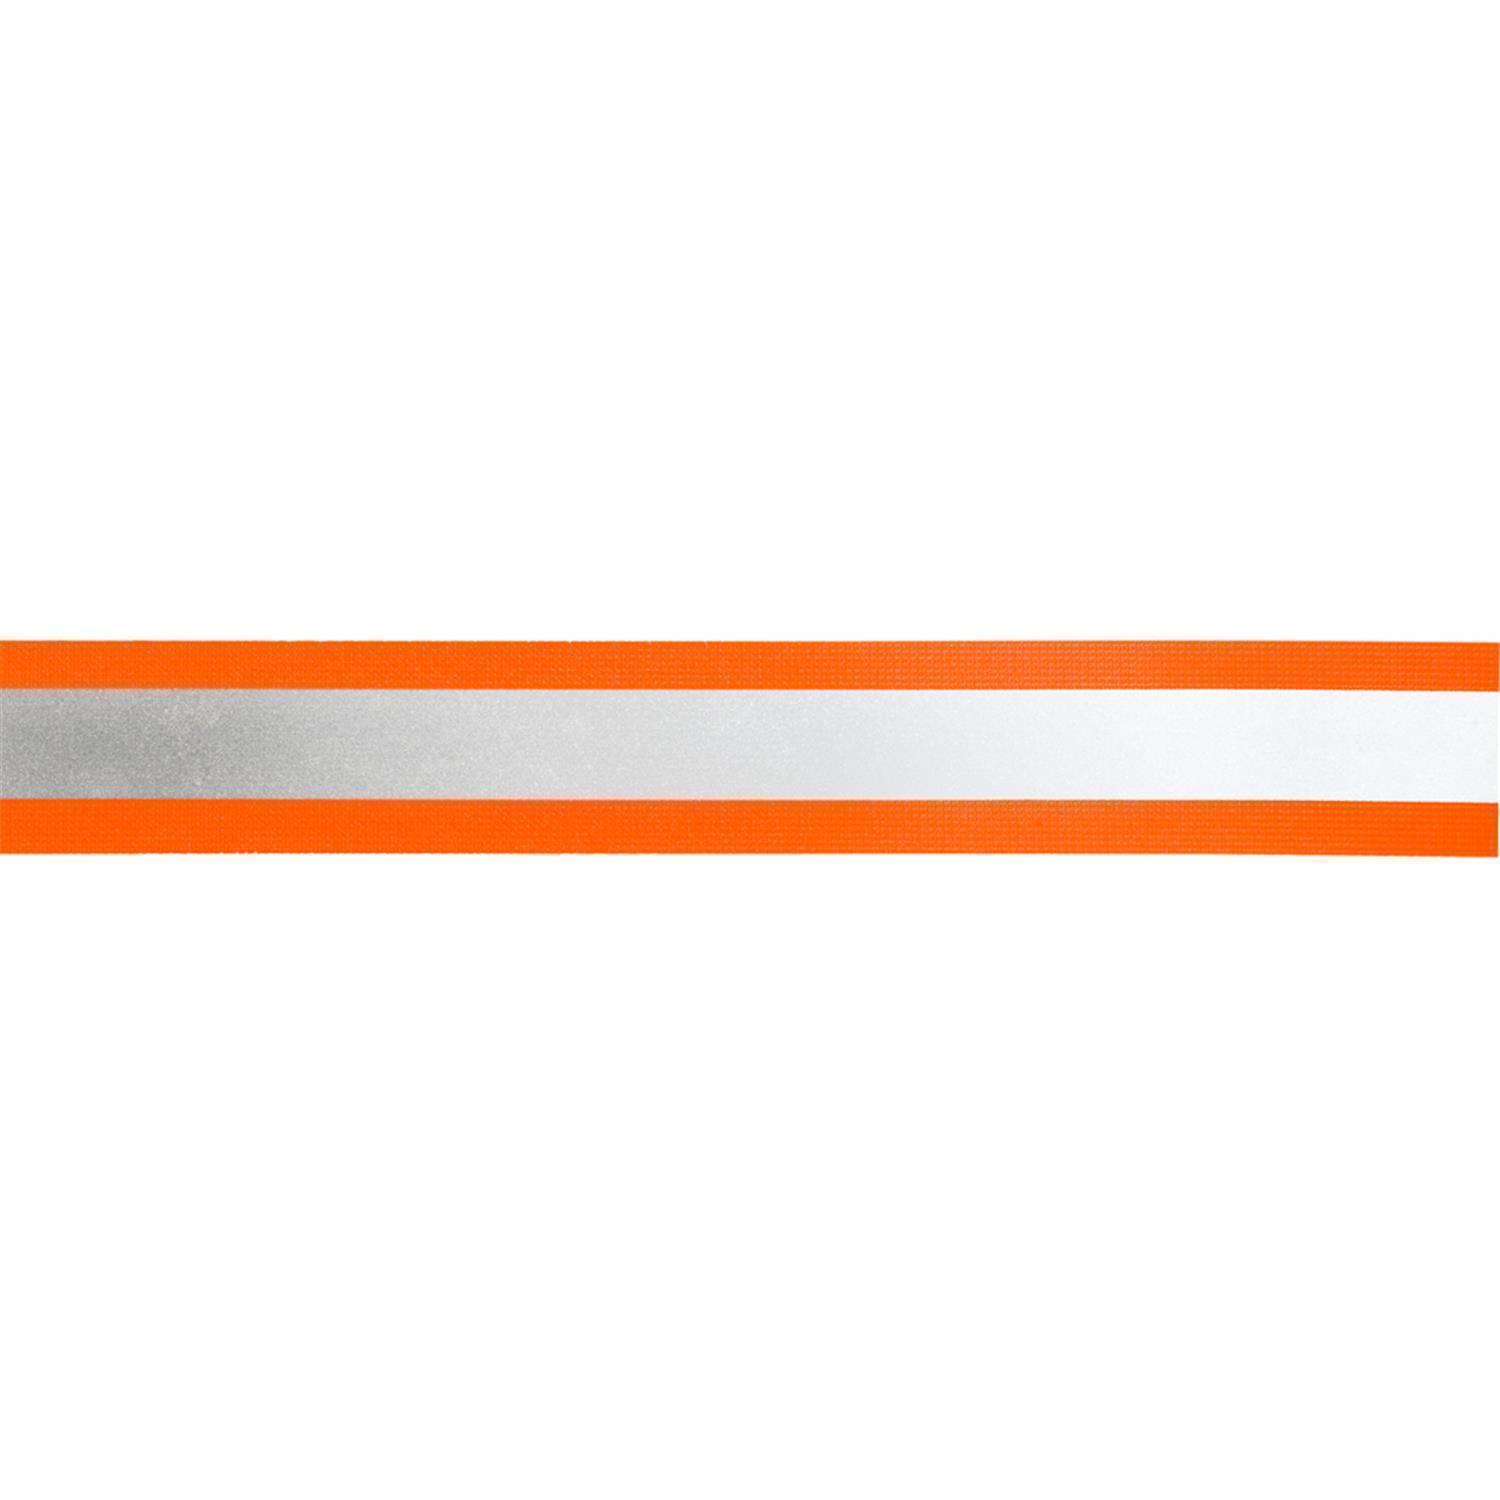 5 m Elastisches Reflektorband 50mm breit orange-silber